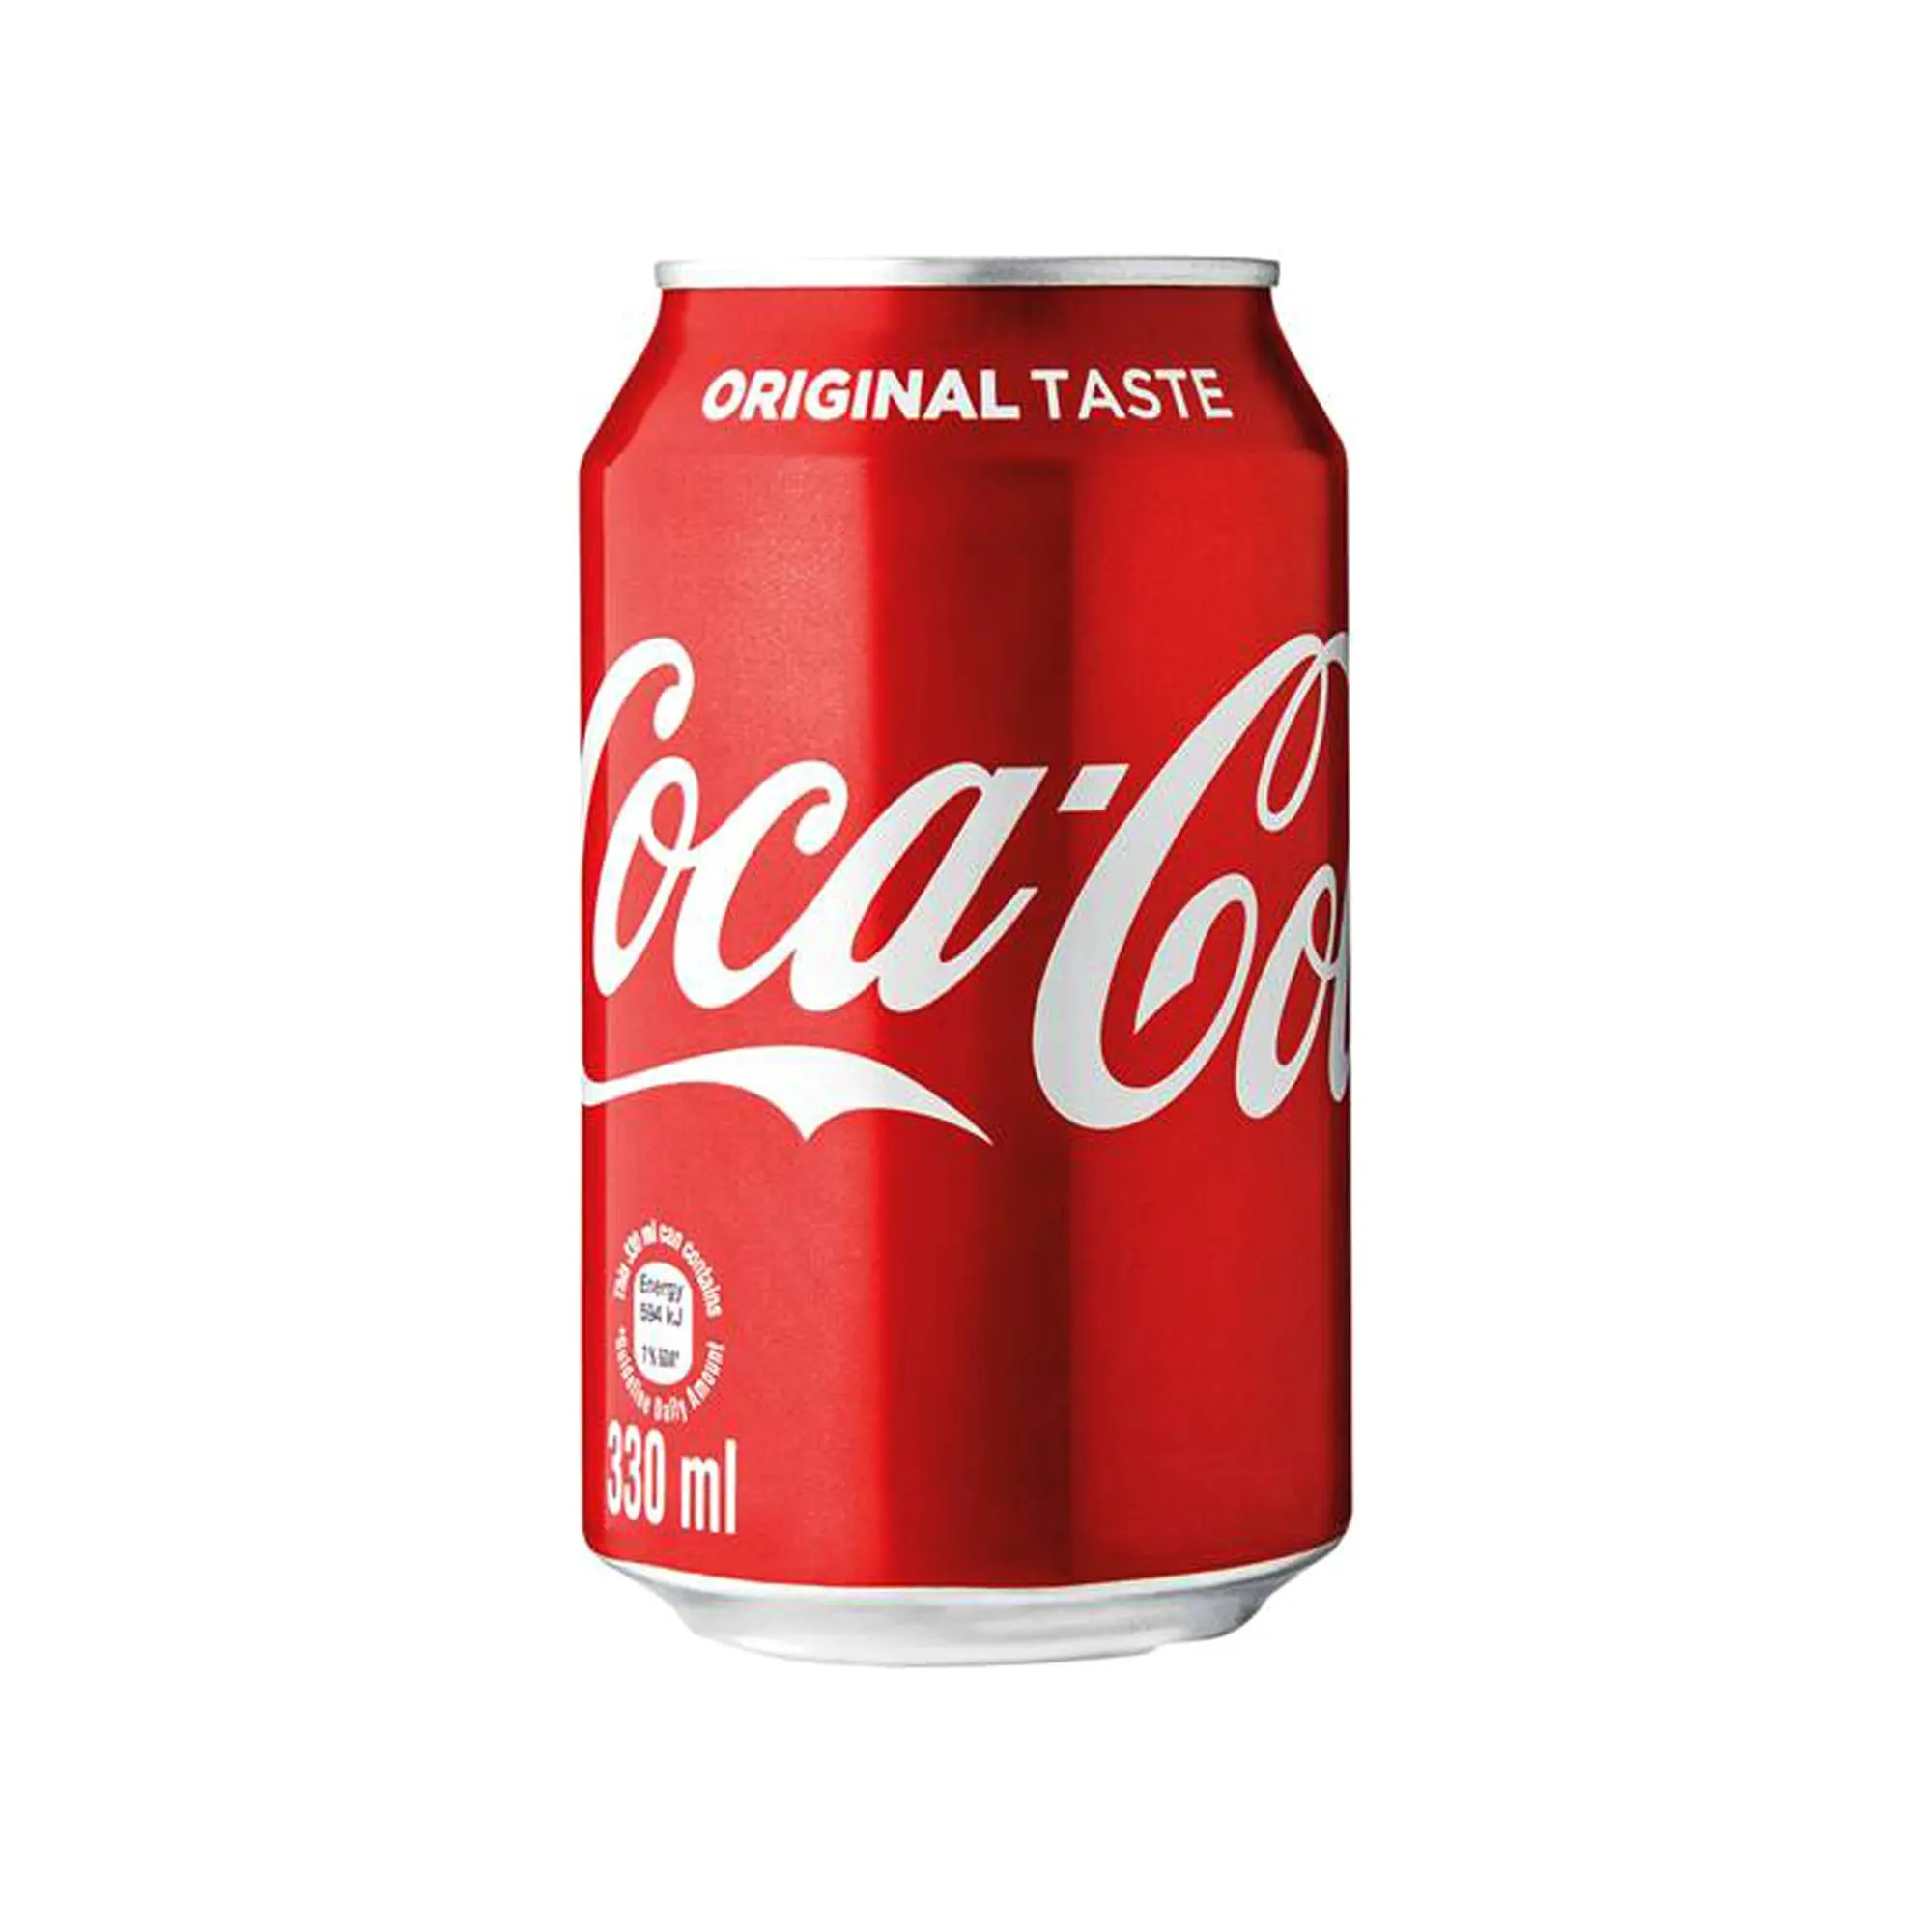 coca cola 330ml buy coca cola 33cl 330ml can coca cola coca cola 330ml product on alibaba com